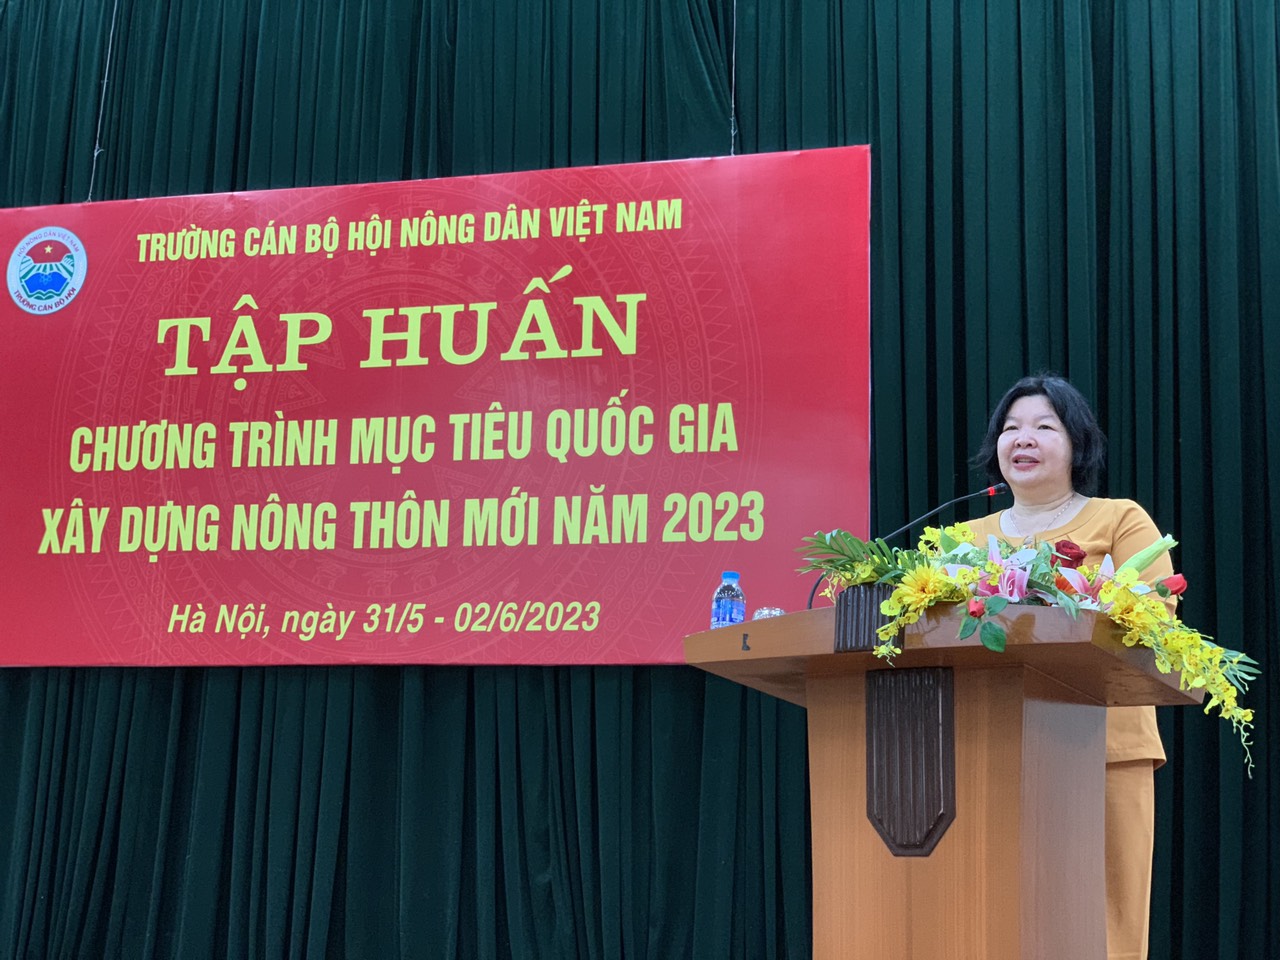 Trường Cán bộ Hội Nông dân Việt Nam khai giảng lớp tập huấn về Chương trình mục tiêu Quốc gia xây dựng nông thôn mới - Ảnh 4.